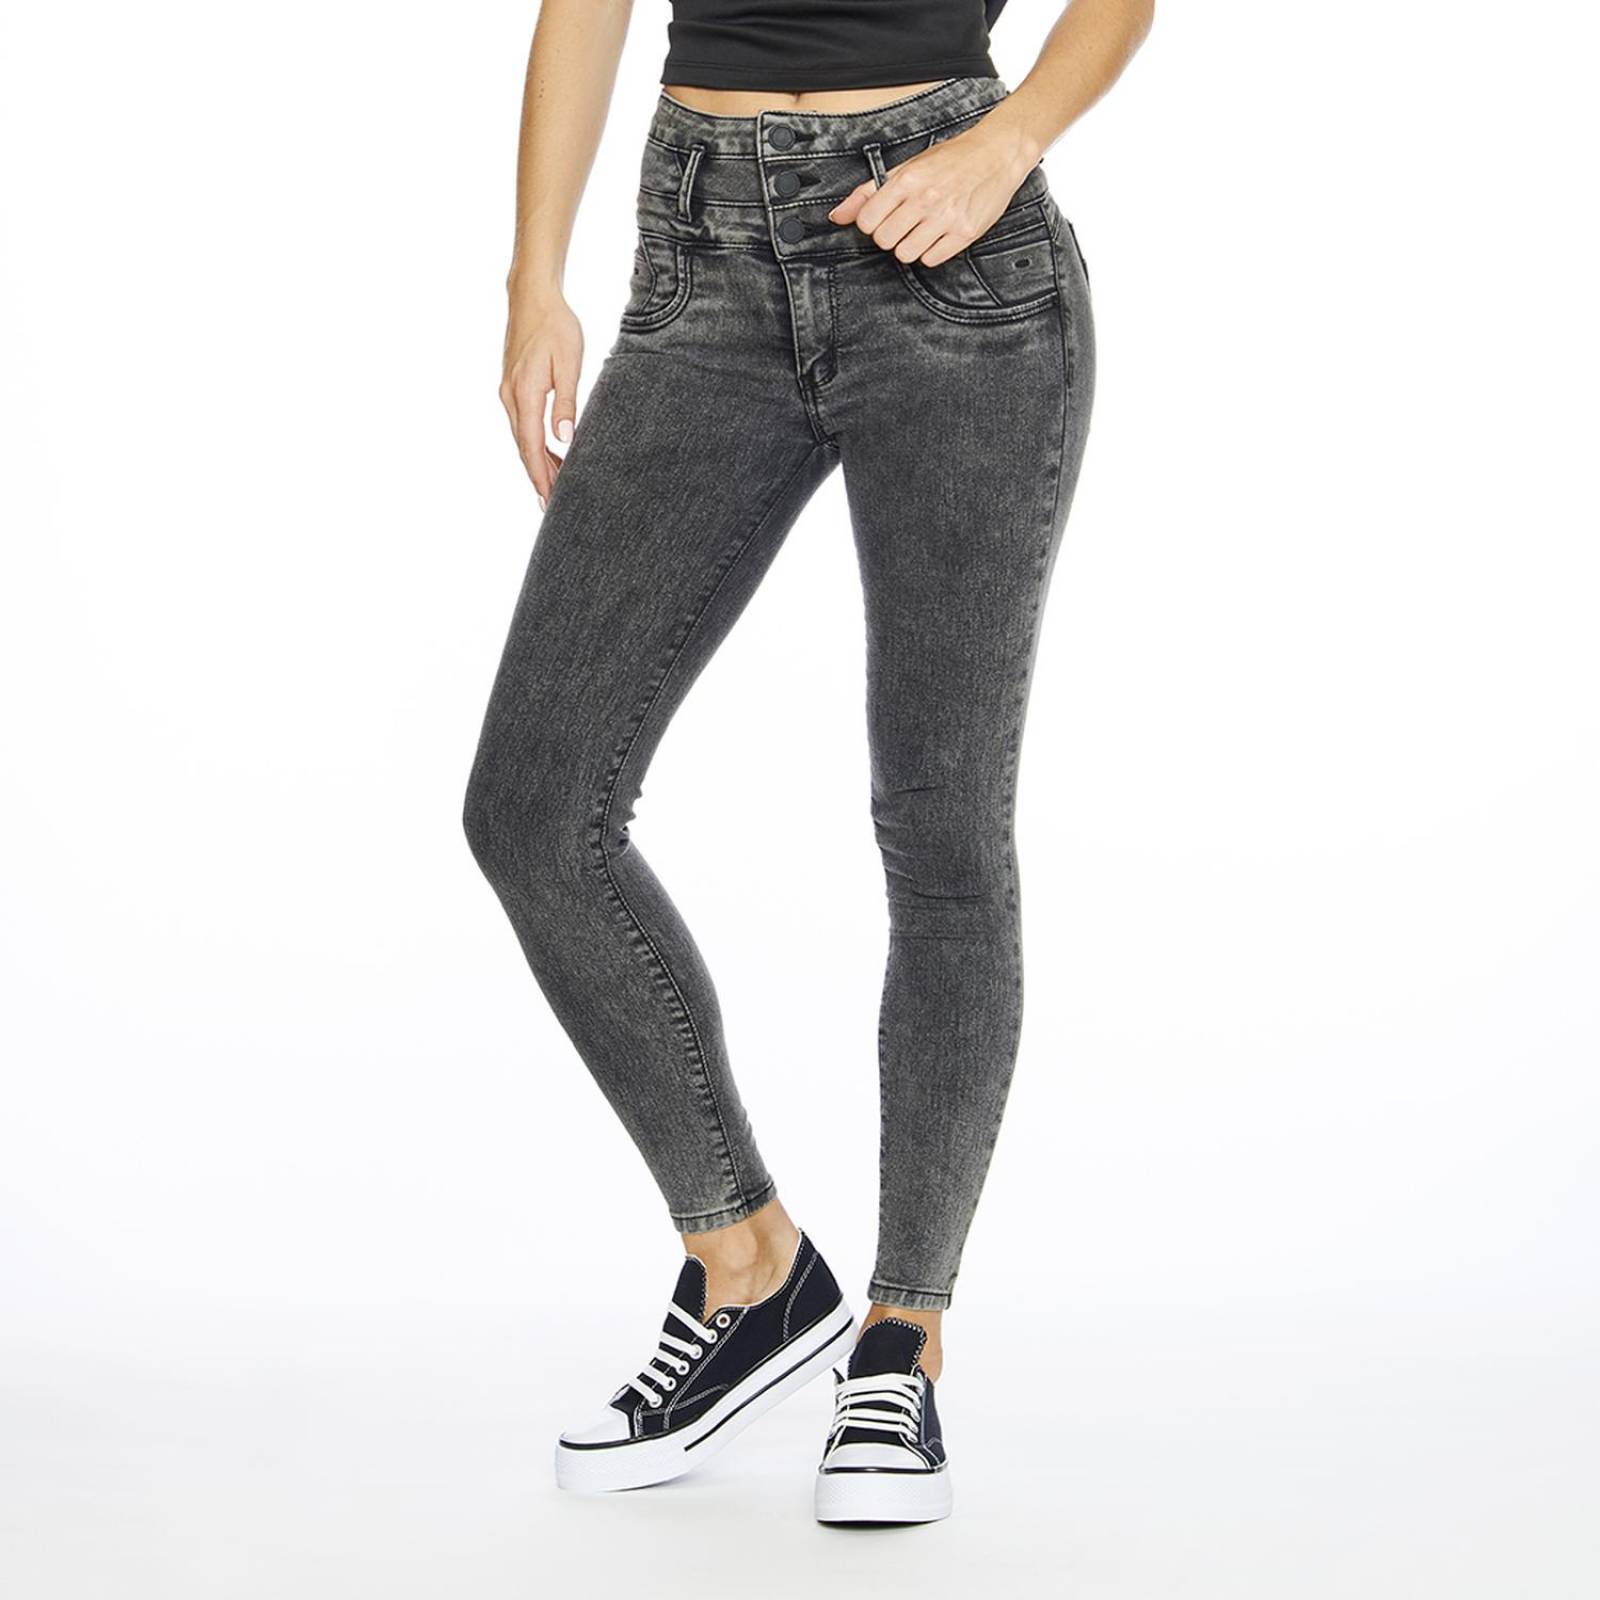 Jeans Mujer levanta pompas Corte skinny Negro Deslavado